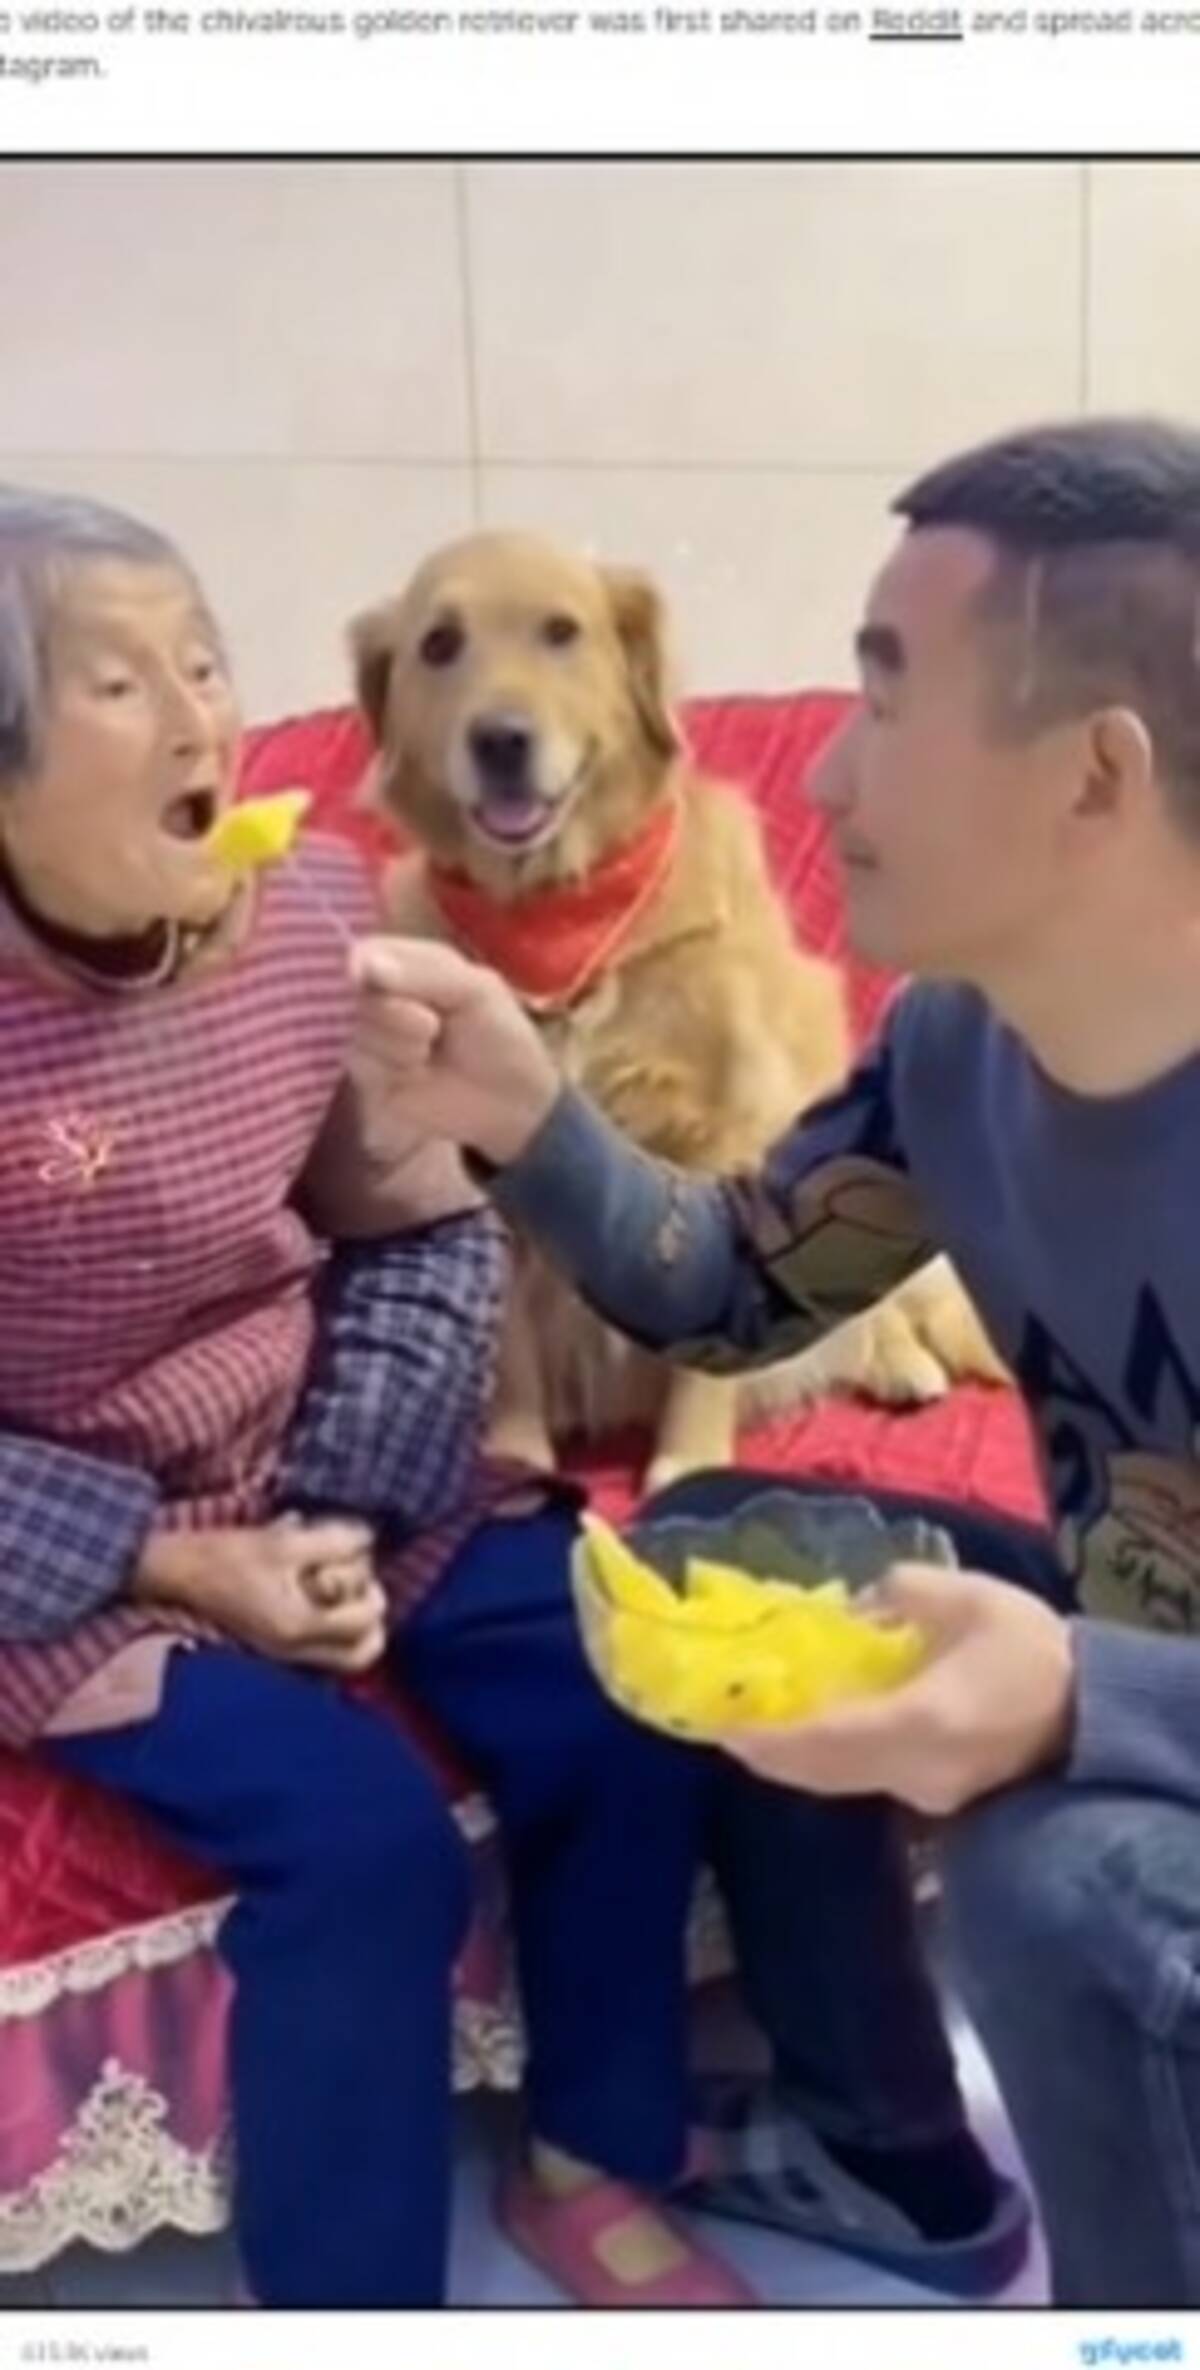 祖母のフルーツを横取りする孫に 無礼者 と怒り出す犬 動画あり 22年1月1日 エキサイトニュース